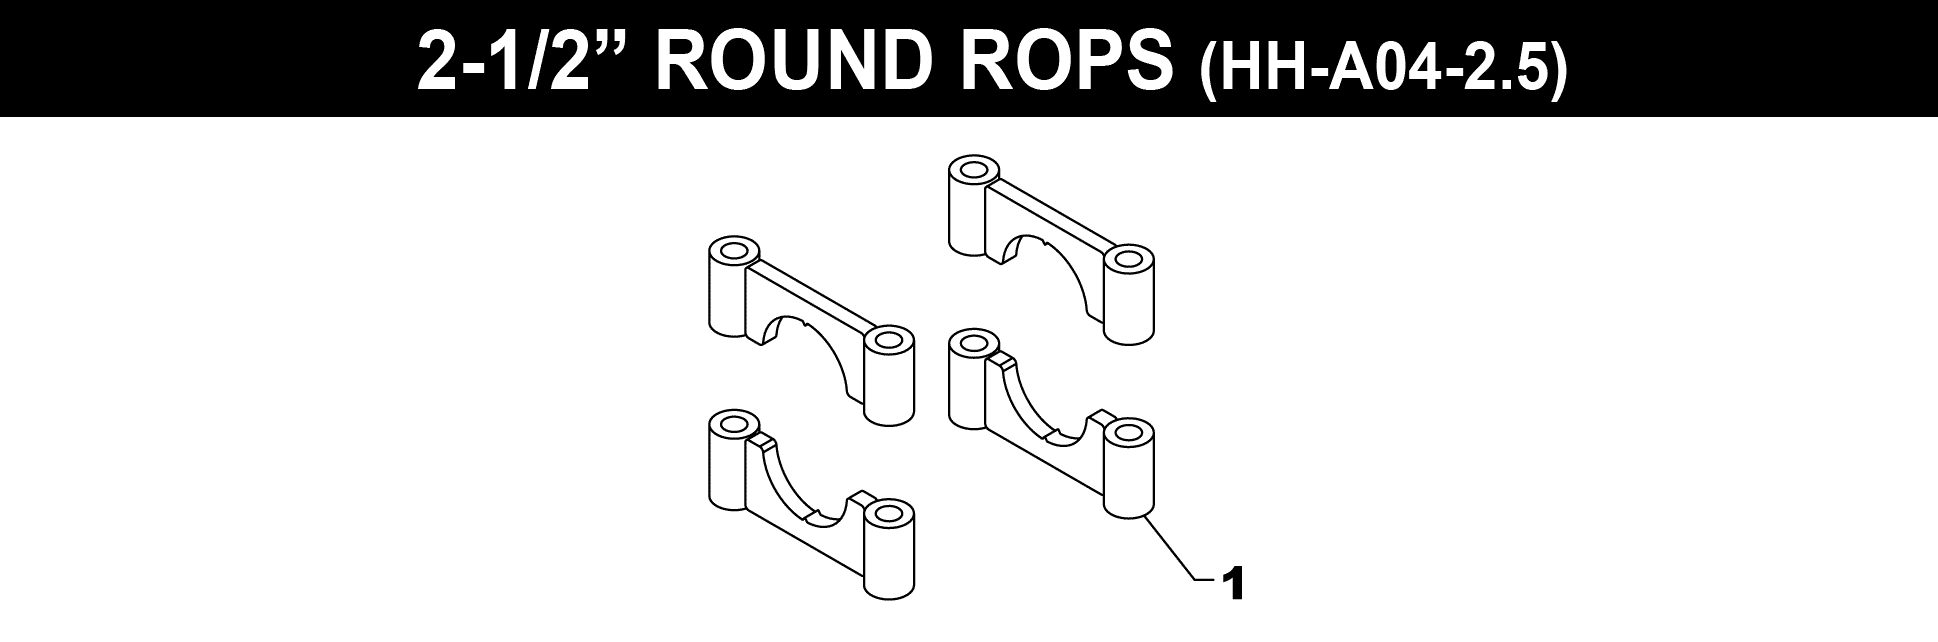 2-1/2" ROUND ROPS BRACKET